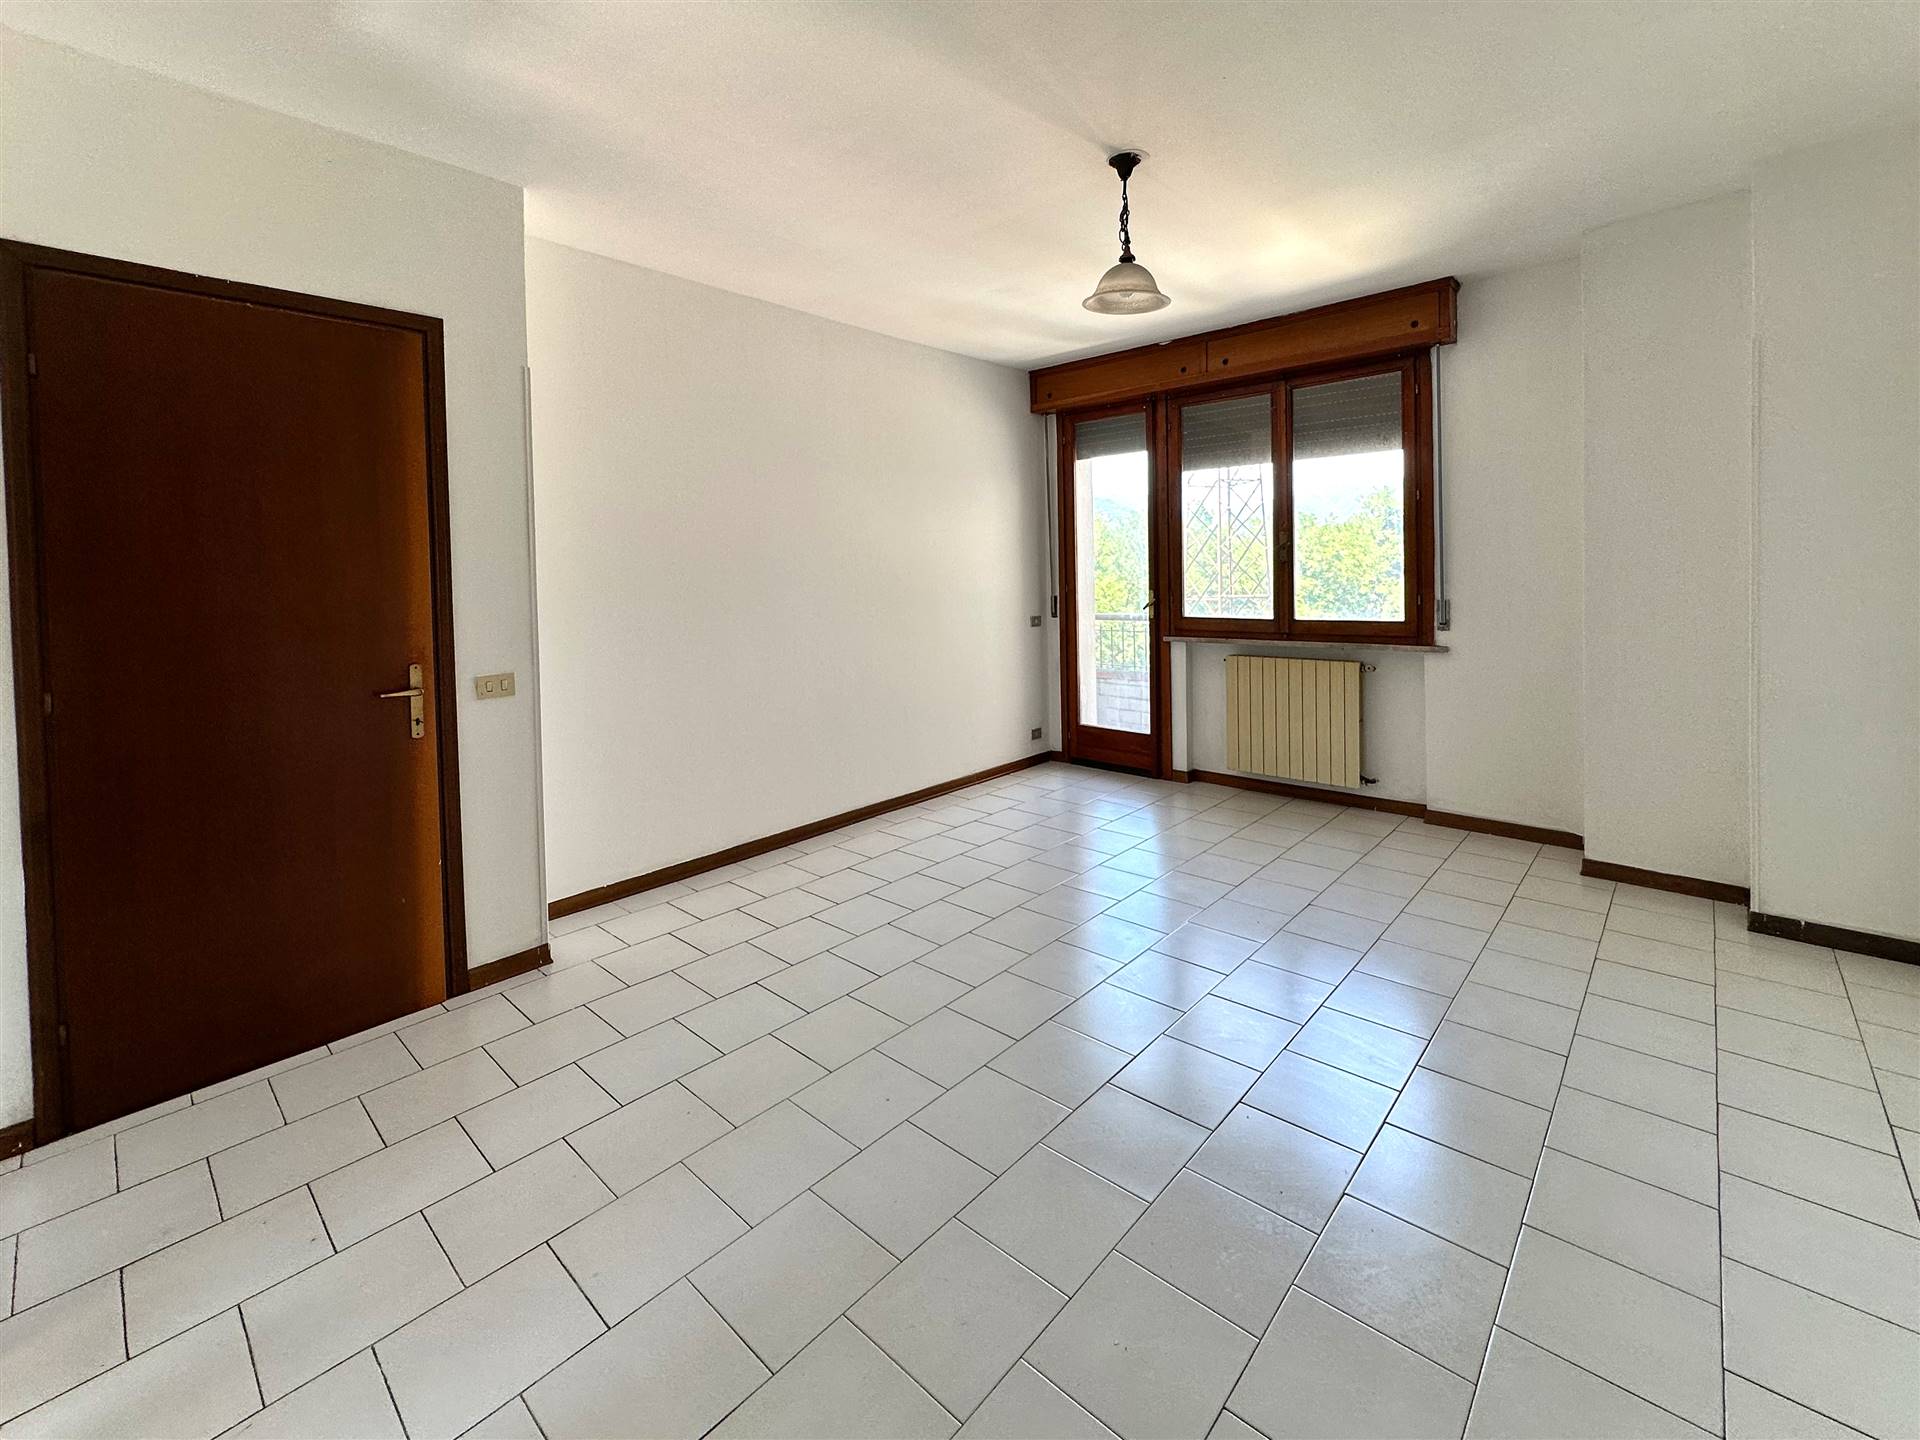 Appartamento in vendita a Aulla, 5 locali, prezzo € 78.000 | PortaleAgenzieImmobiliari.it